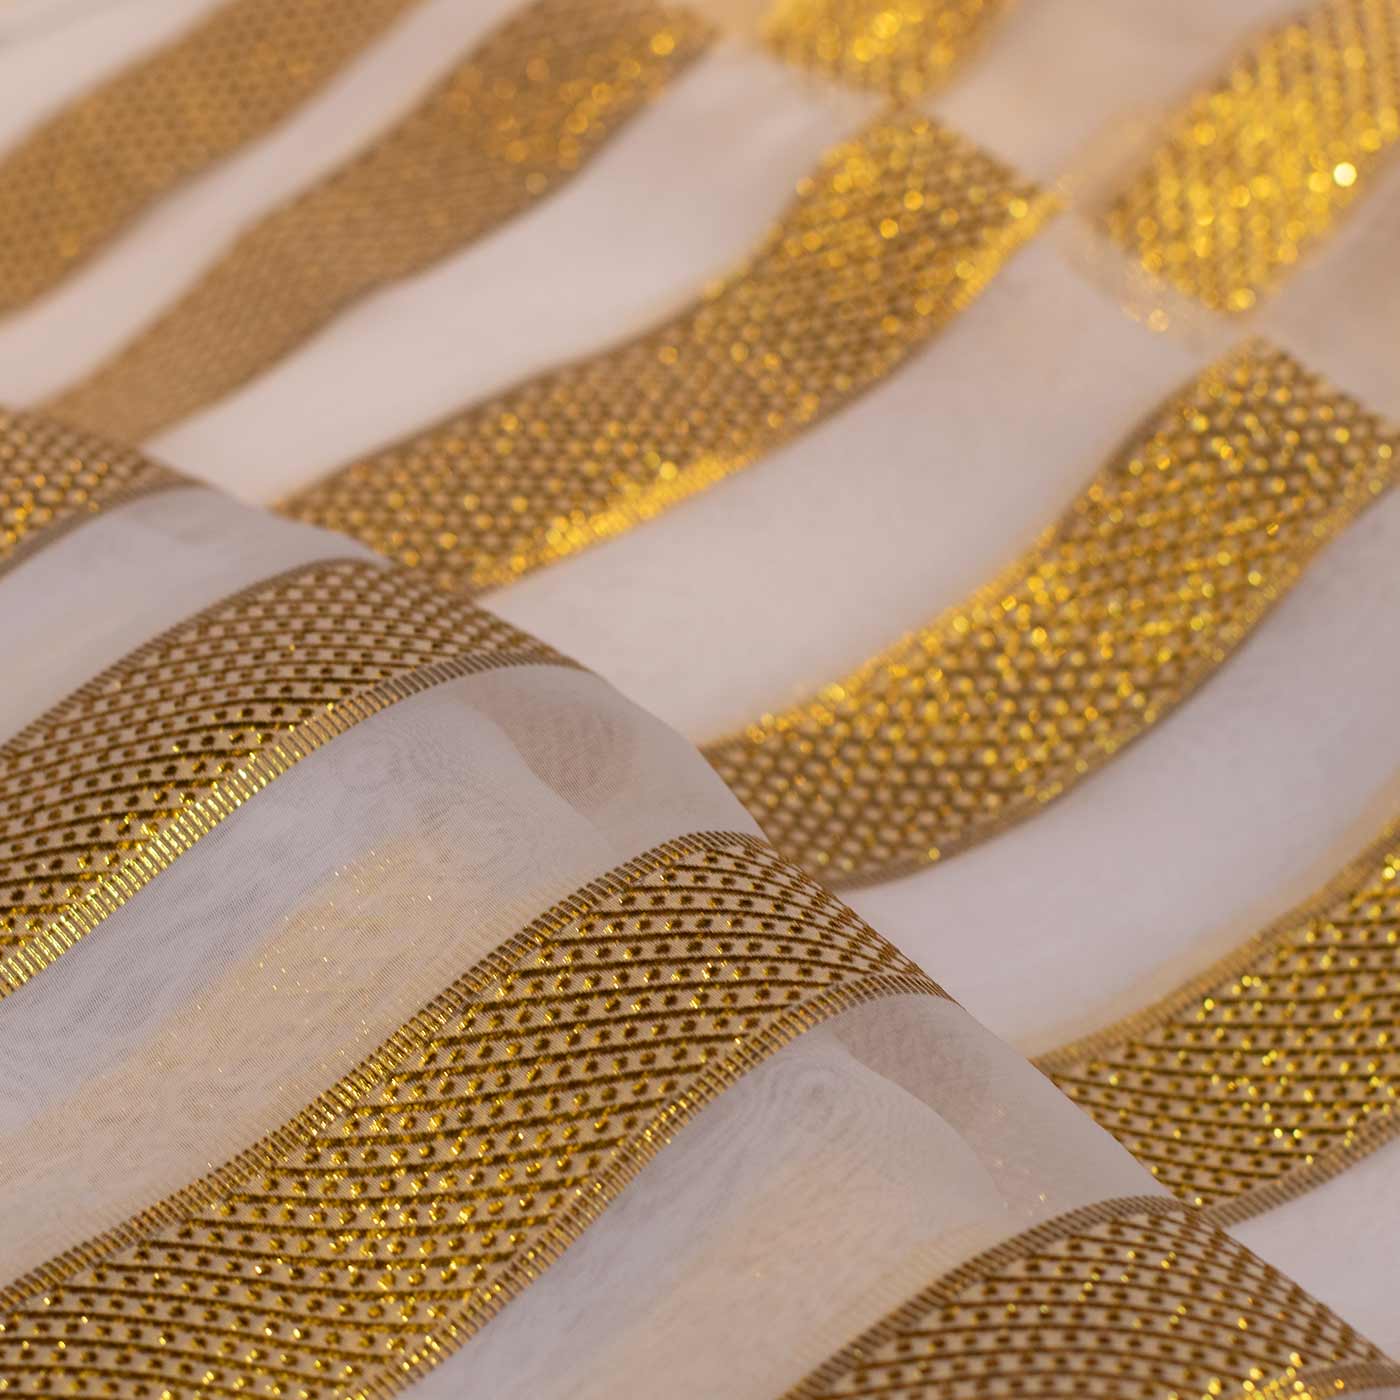 Gold & Ivory French Chiffon Fabric